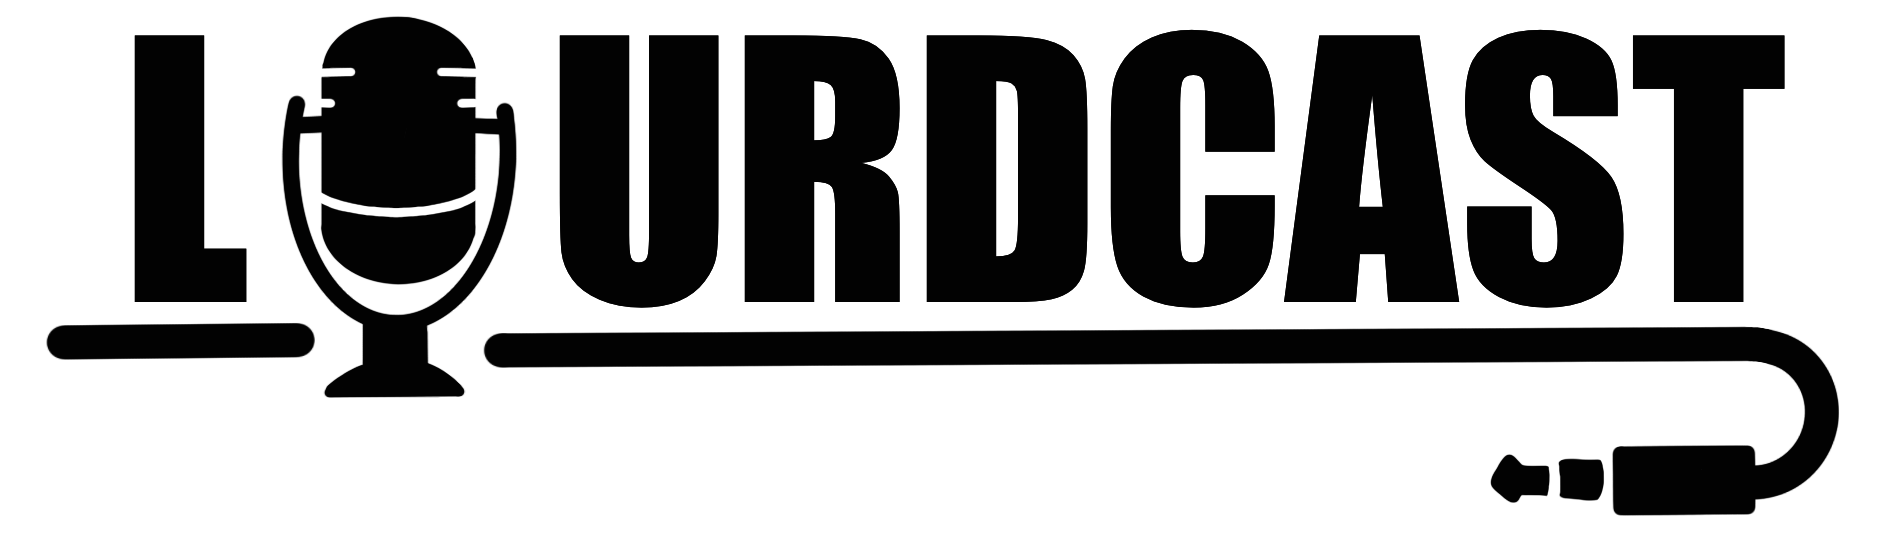 lourdcast logo